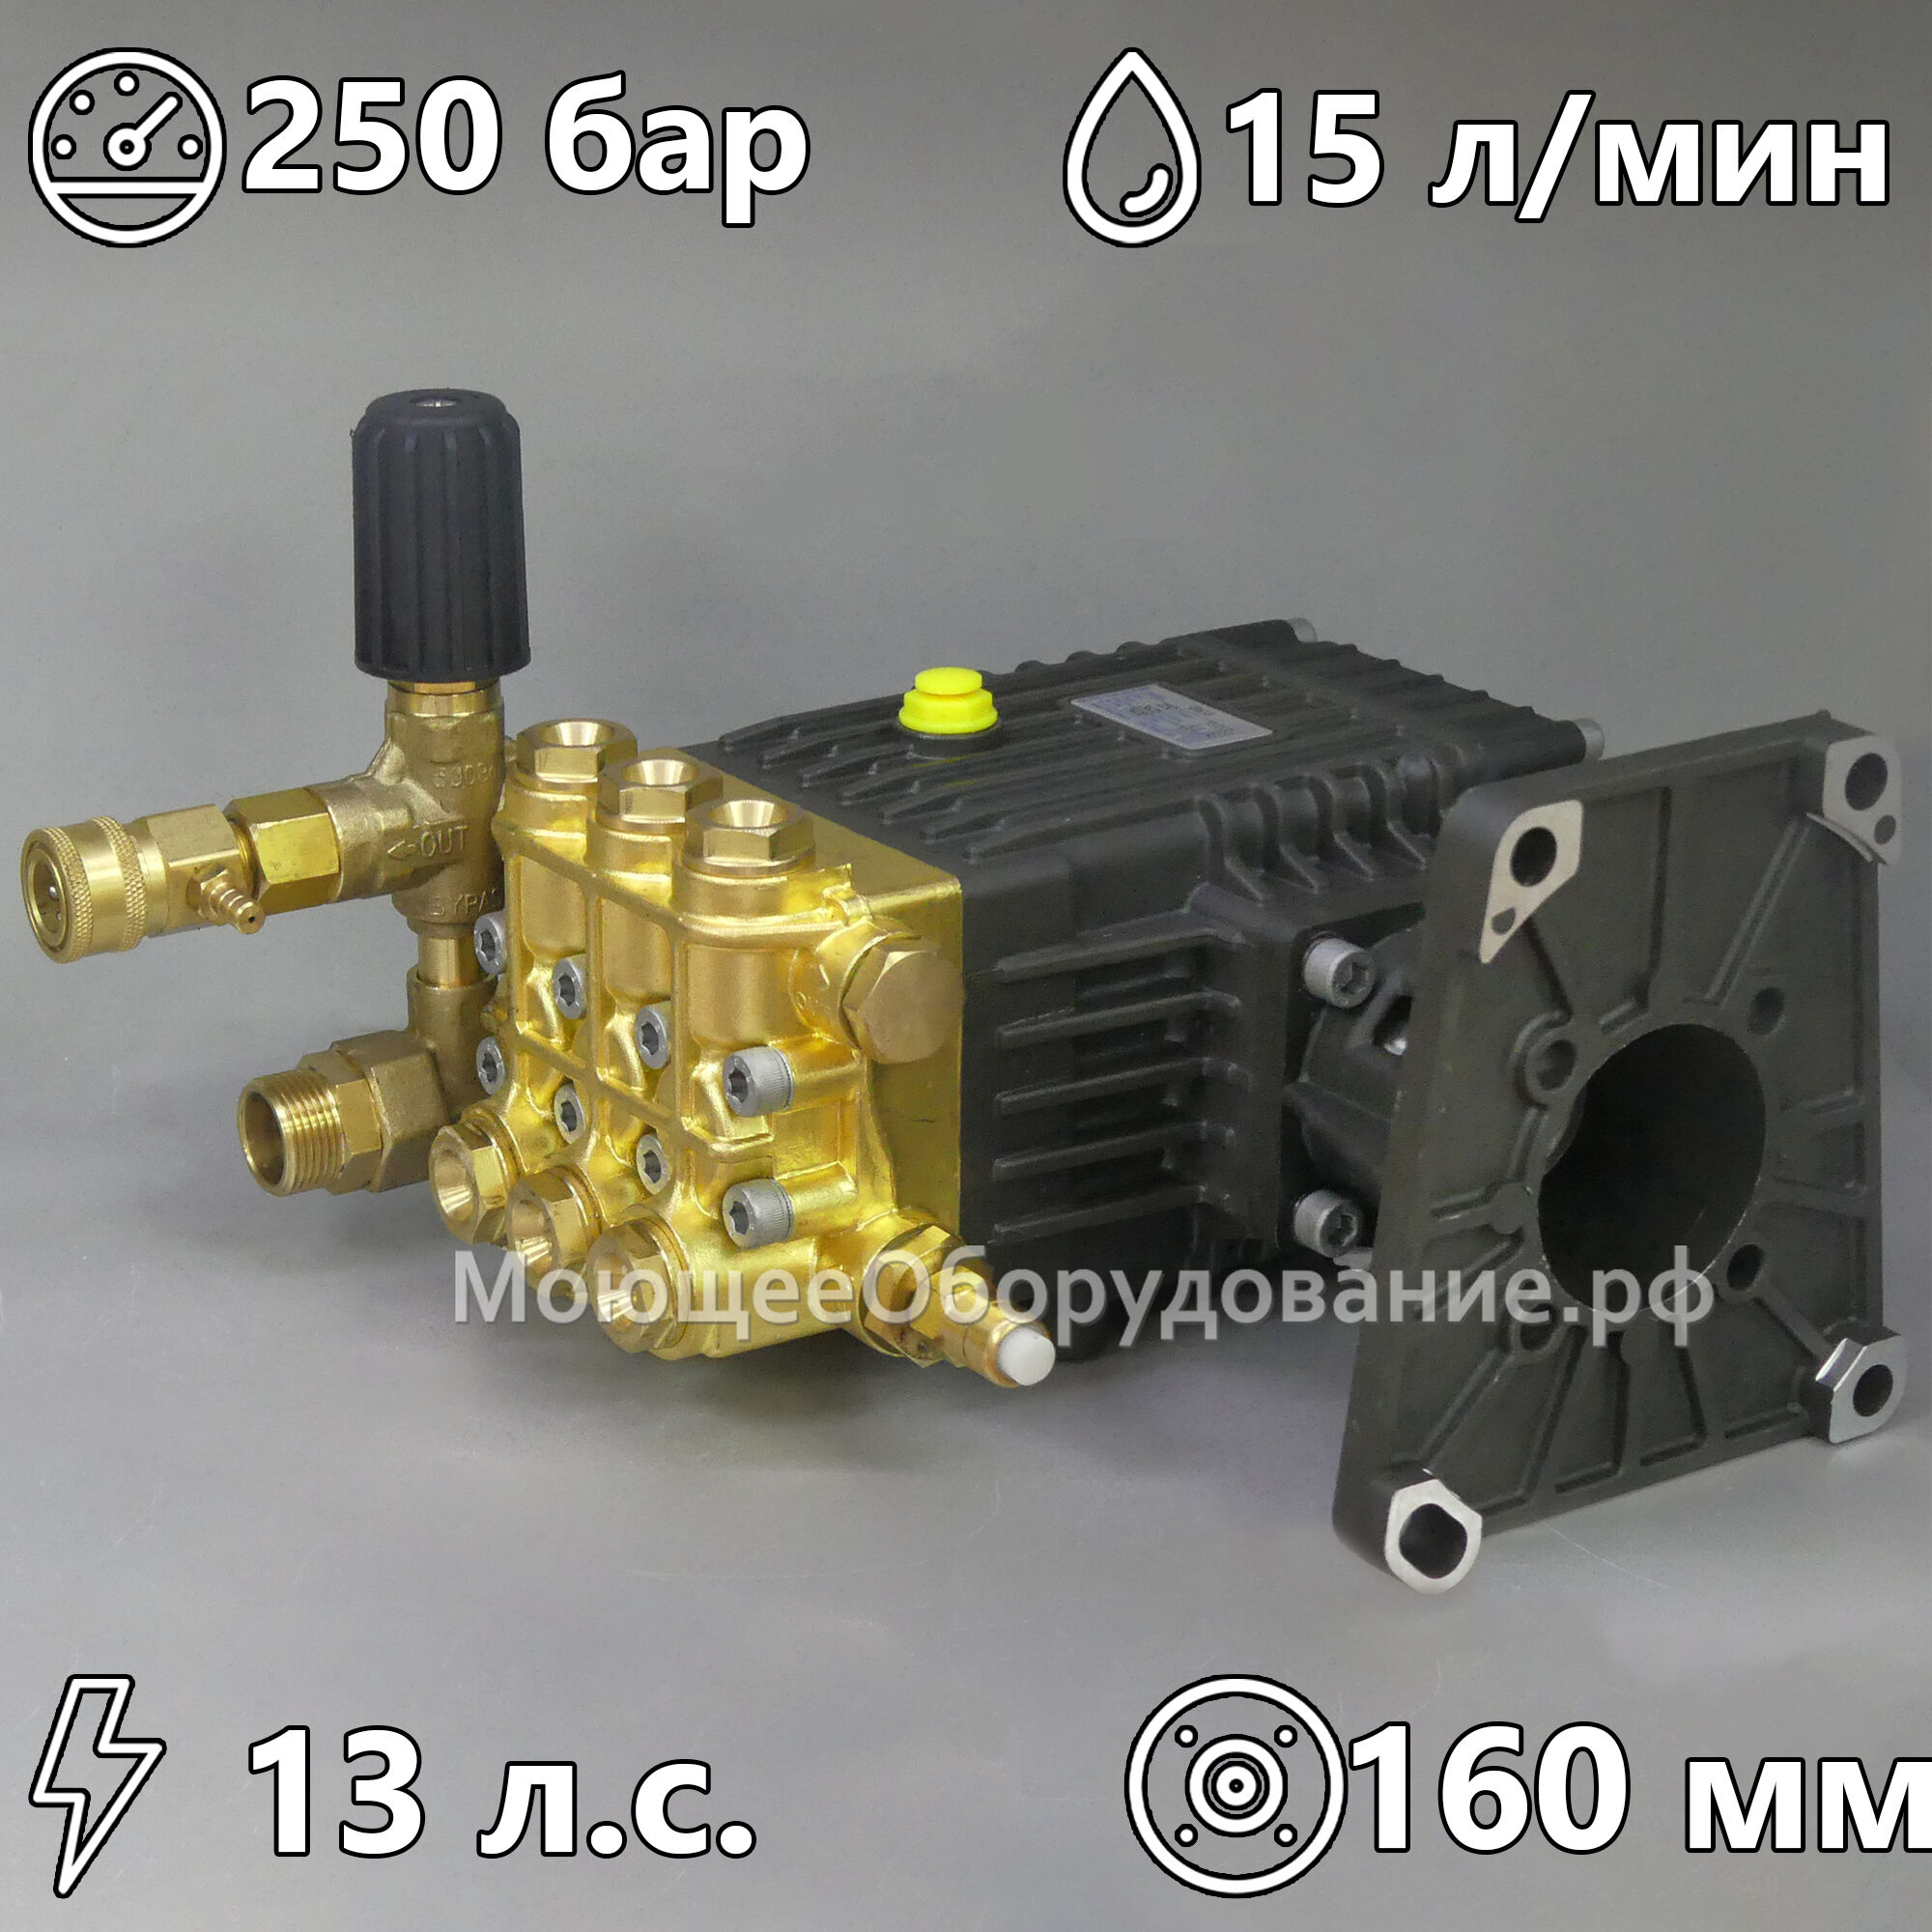 Насос высокого давления для бензиновых аппаратов Bounche 3WZ 1807-D1A (250 бар, 15 л/мин)